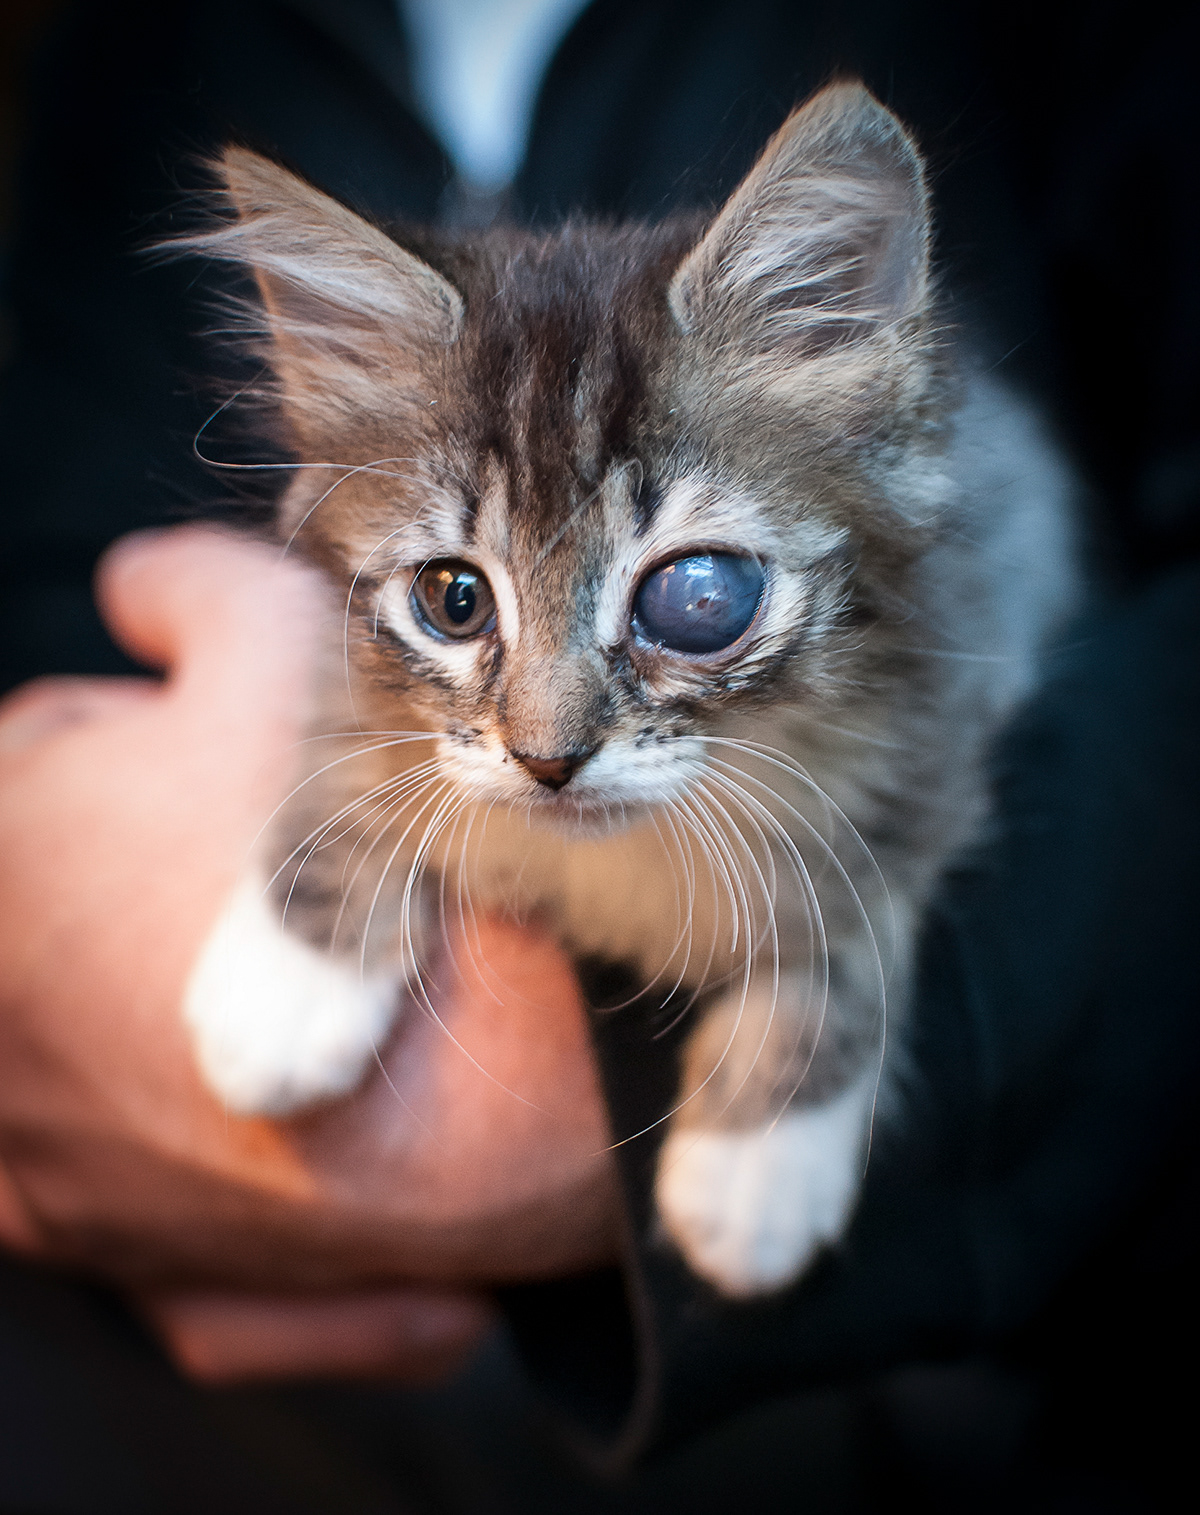 Cat cats foster kittens kittens Baltimore SPCA aspca maryland animal shelter Foster mdspca